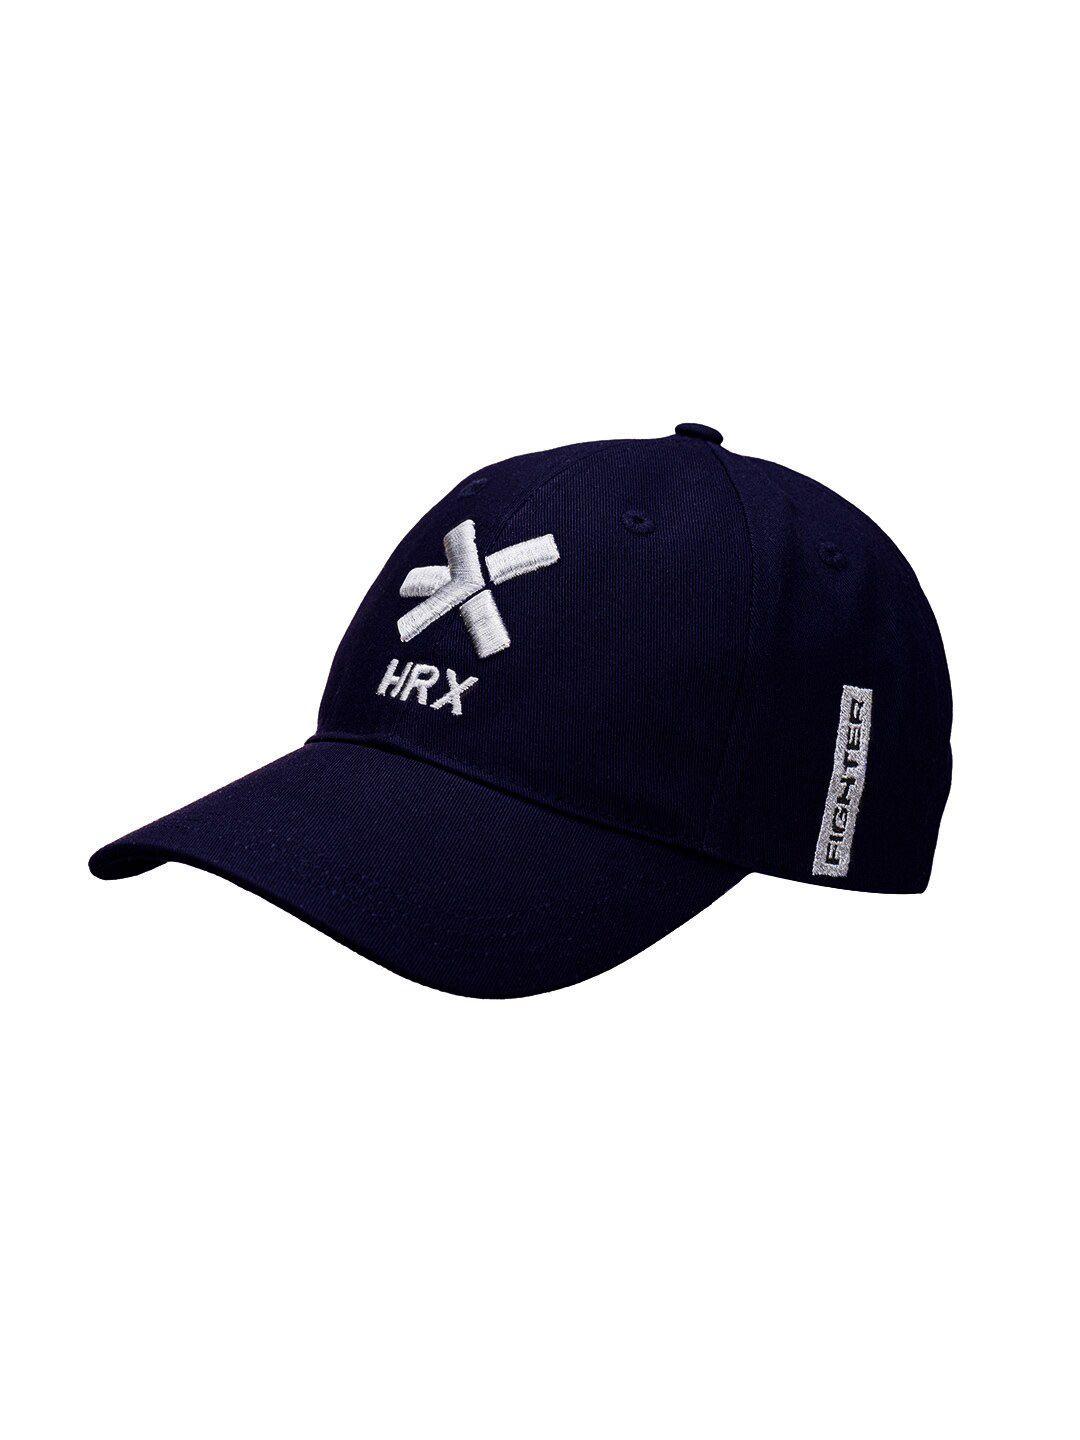 hrx by hrithik roshan unisex navy blue & white embroidered baseball cap